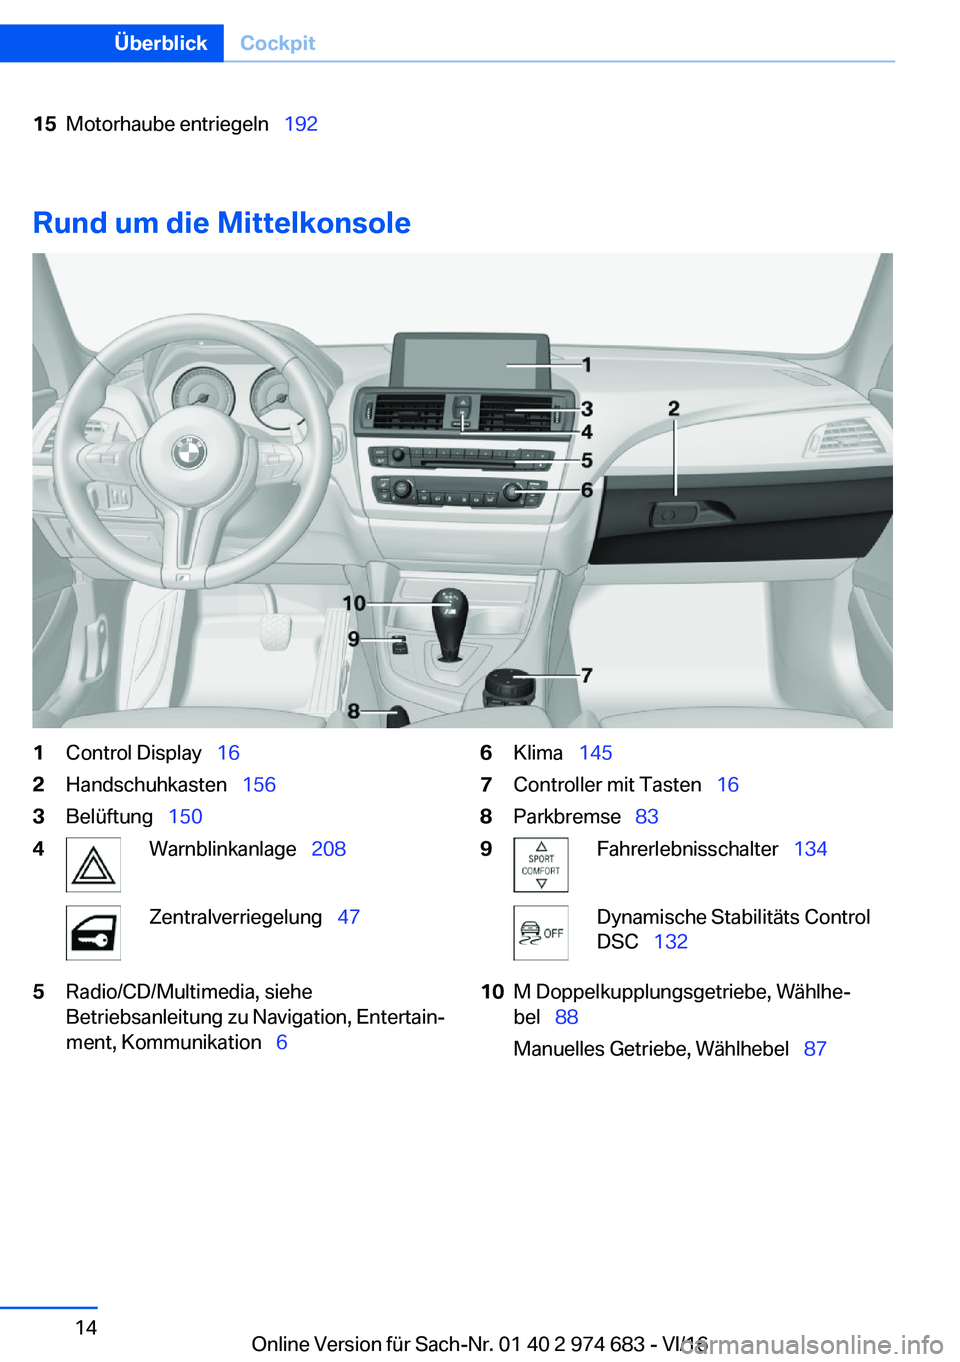 BMW M2 2017  Betriebsanleitungen (in German) �1�5�M�o�t�o�r�h�a�u�b�e� �e�n�t�r�i�e�g�e�l�n\_�1�9�2
�R�u�n�d��u�m��d�i�e��M�i�t�t�e�l�k�o�n�s�o�l�e
�1�C�o�n�t�r�o�l� �D�i�s�p�l�a�y\_�1�6�2�H�a�n�d�s�c�h�u�h�k�a�s�t�e�n\_ �1�5�6�3�B�e�l�